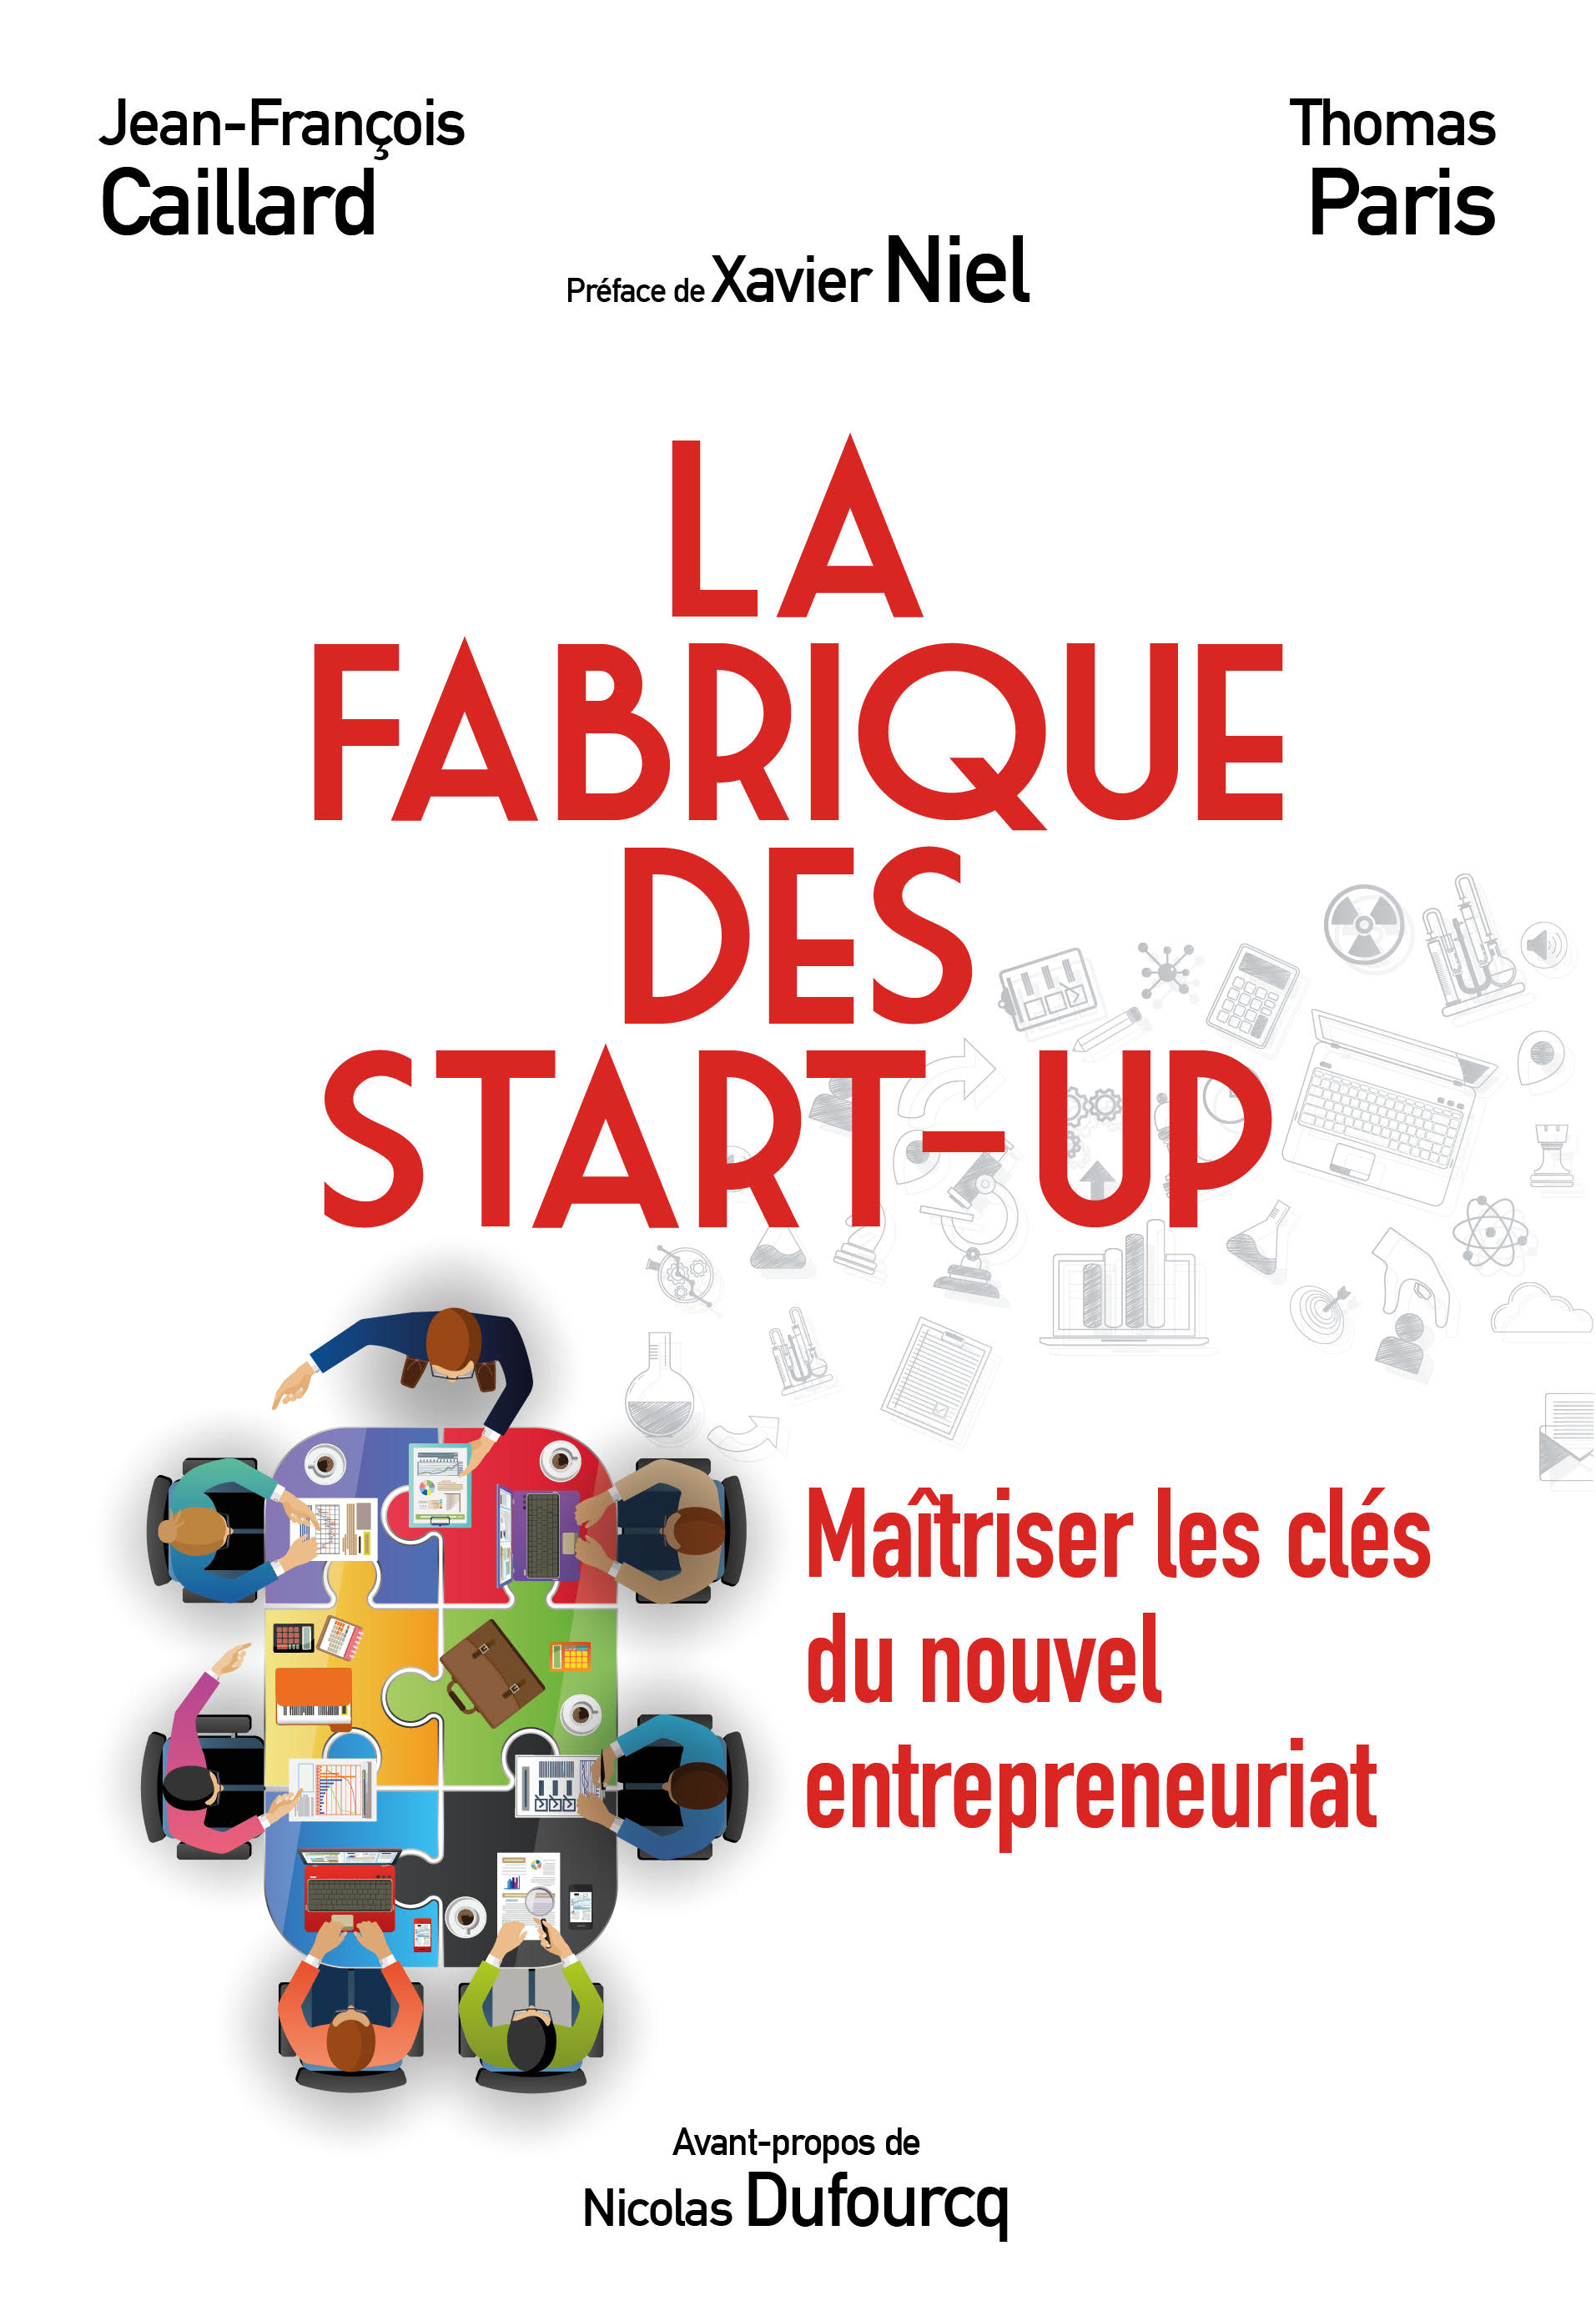 La Fabrique des start-up - Jean-François Caillard, Thomas Paris - Pearson